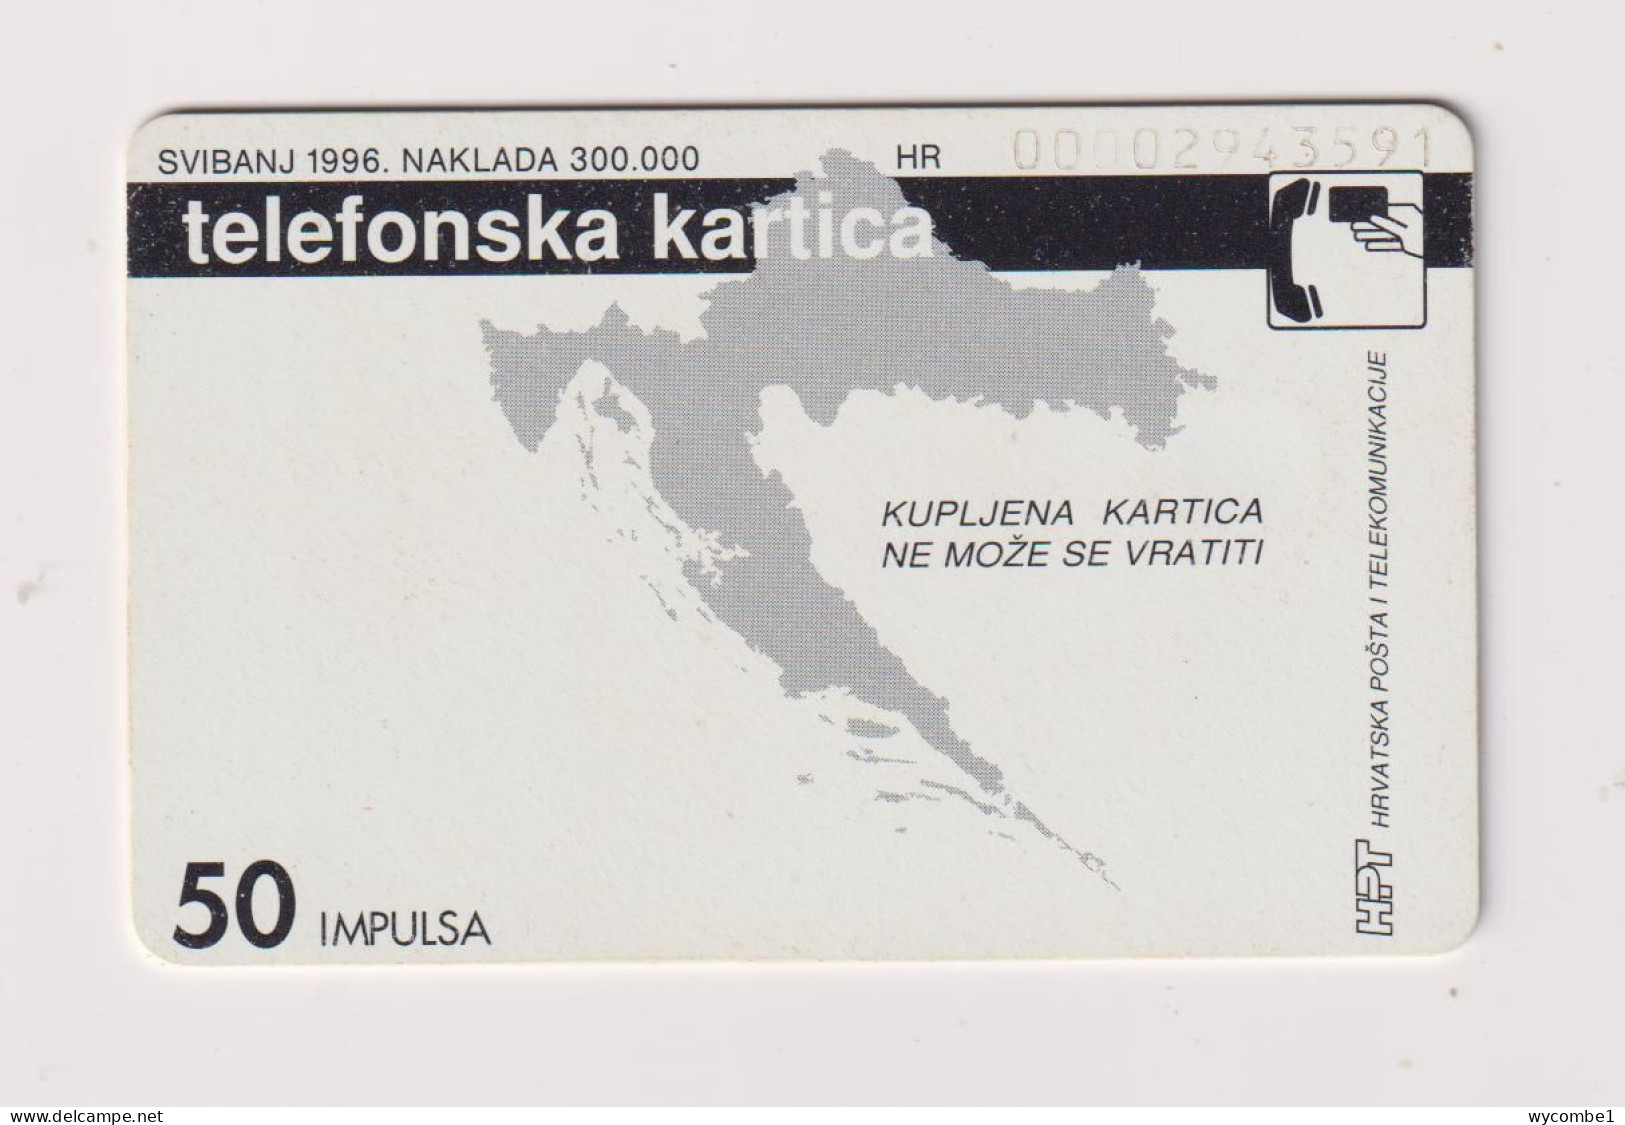 CROATIA -  Cronet 098 Chip  Phonecard - Kroatien